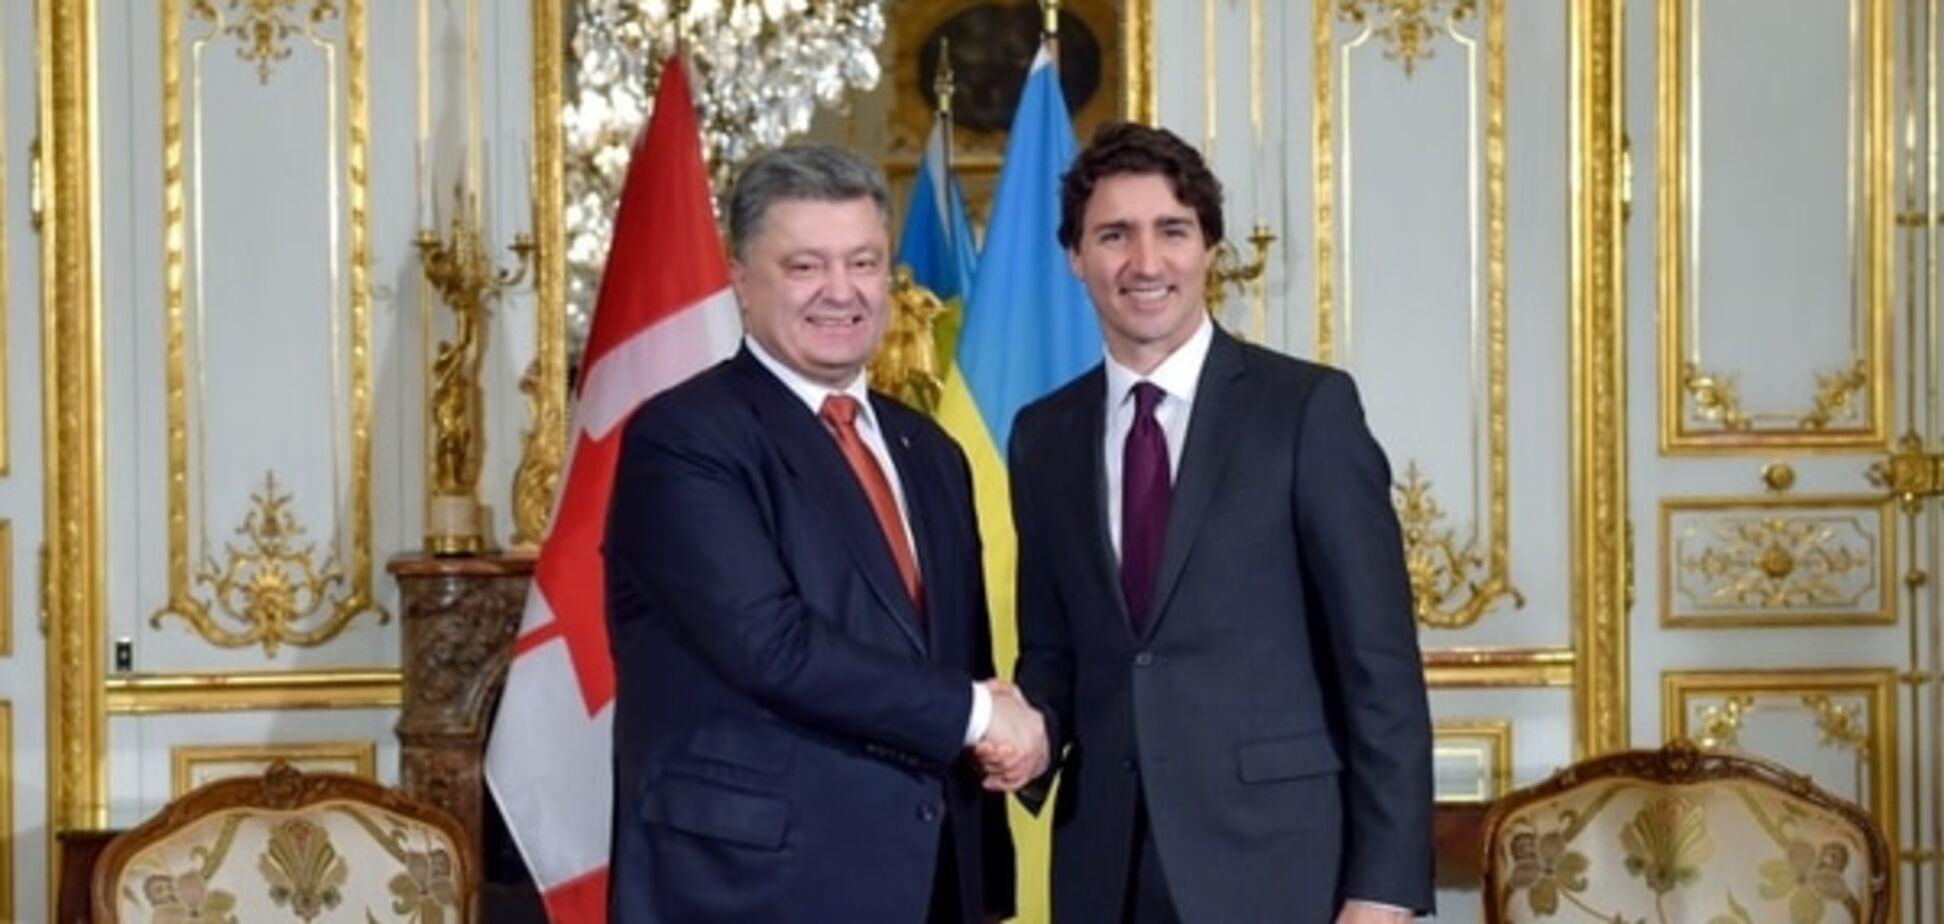 За океан без виз: Порошенко обсудил с премьером Канады упрощение визового режима